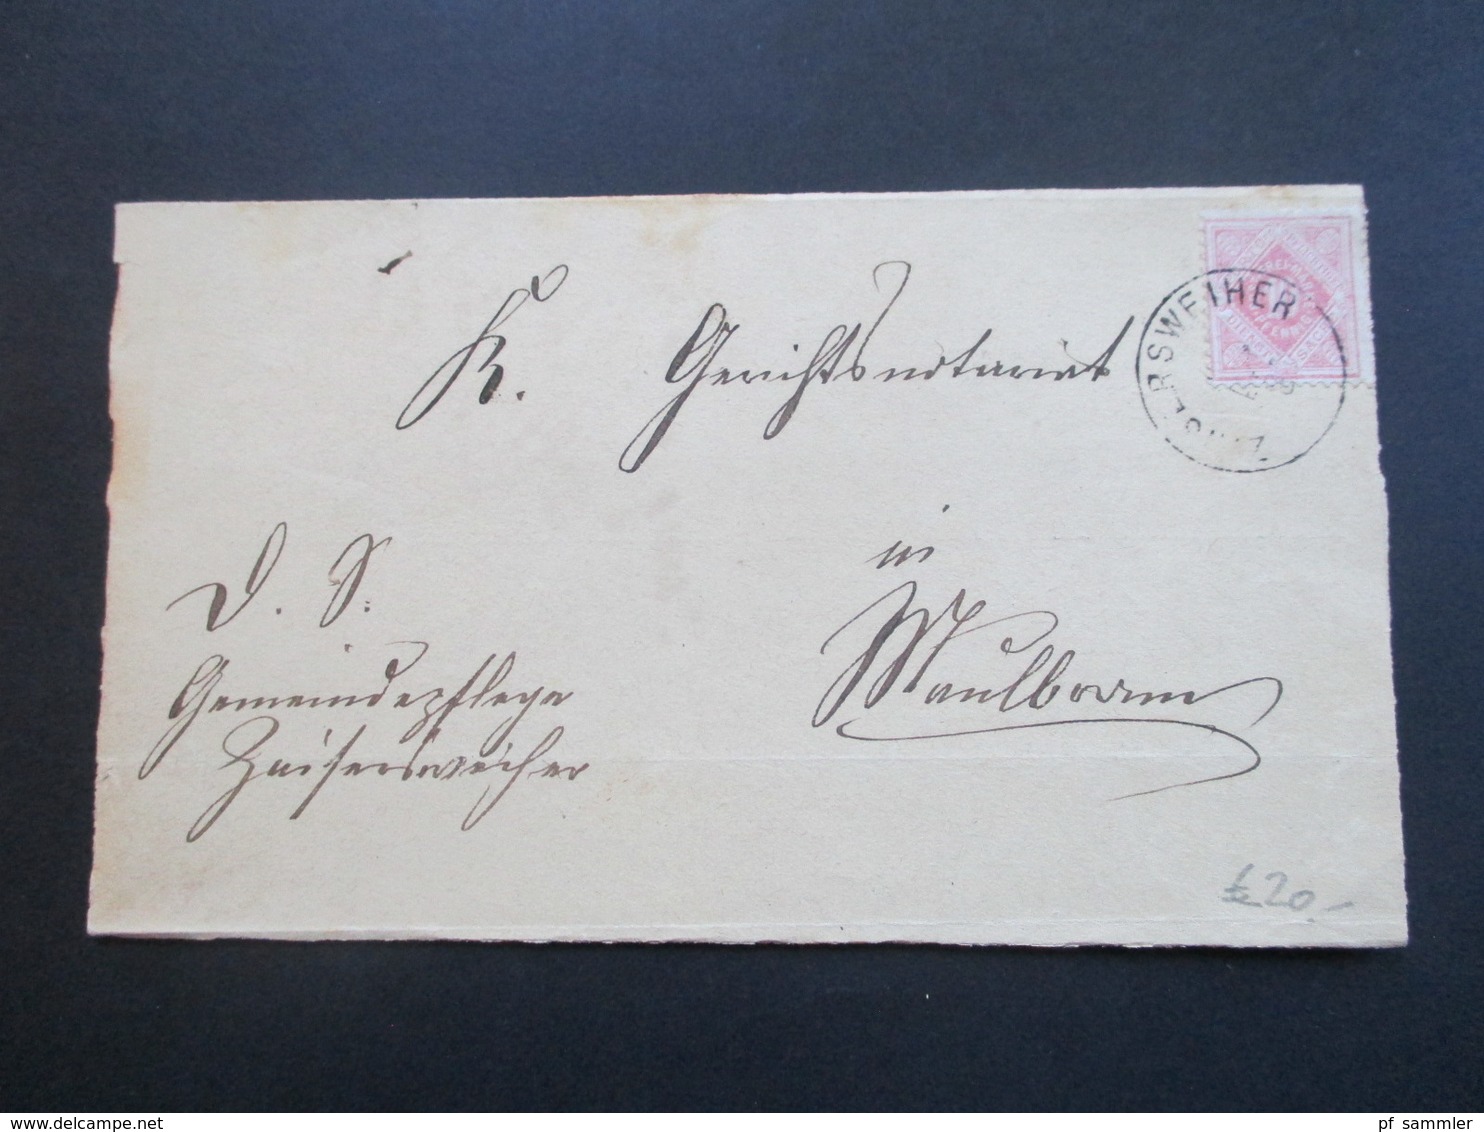 AD Württemberg 1881 Amtsbrief mit Dienstmarke. Doppelt verwendet!! Verzeichnis Notariatsbezirk Maulbronn